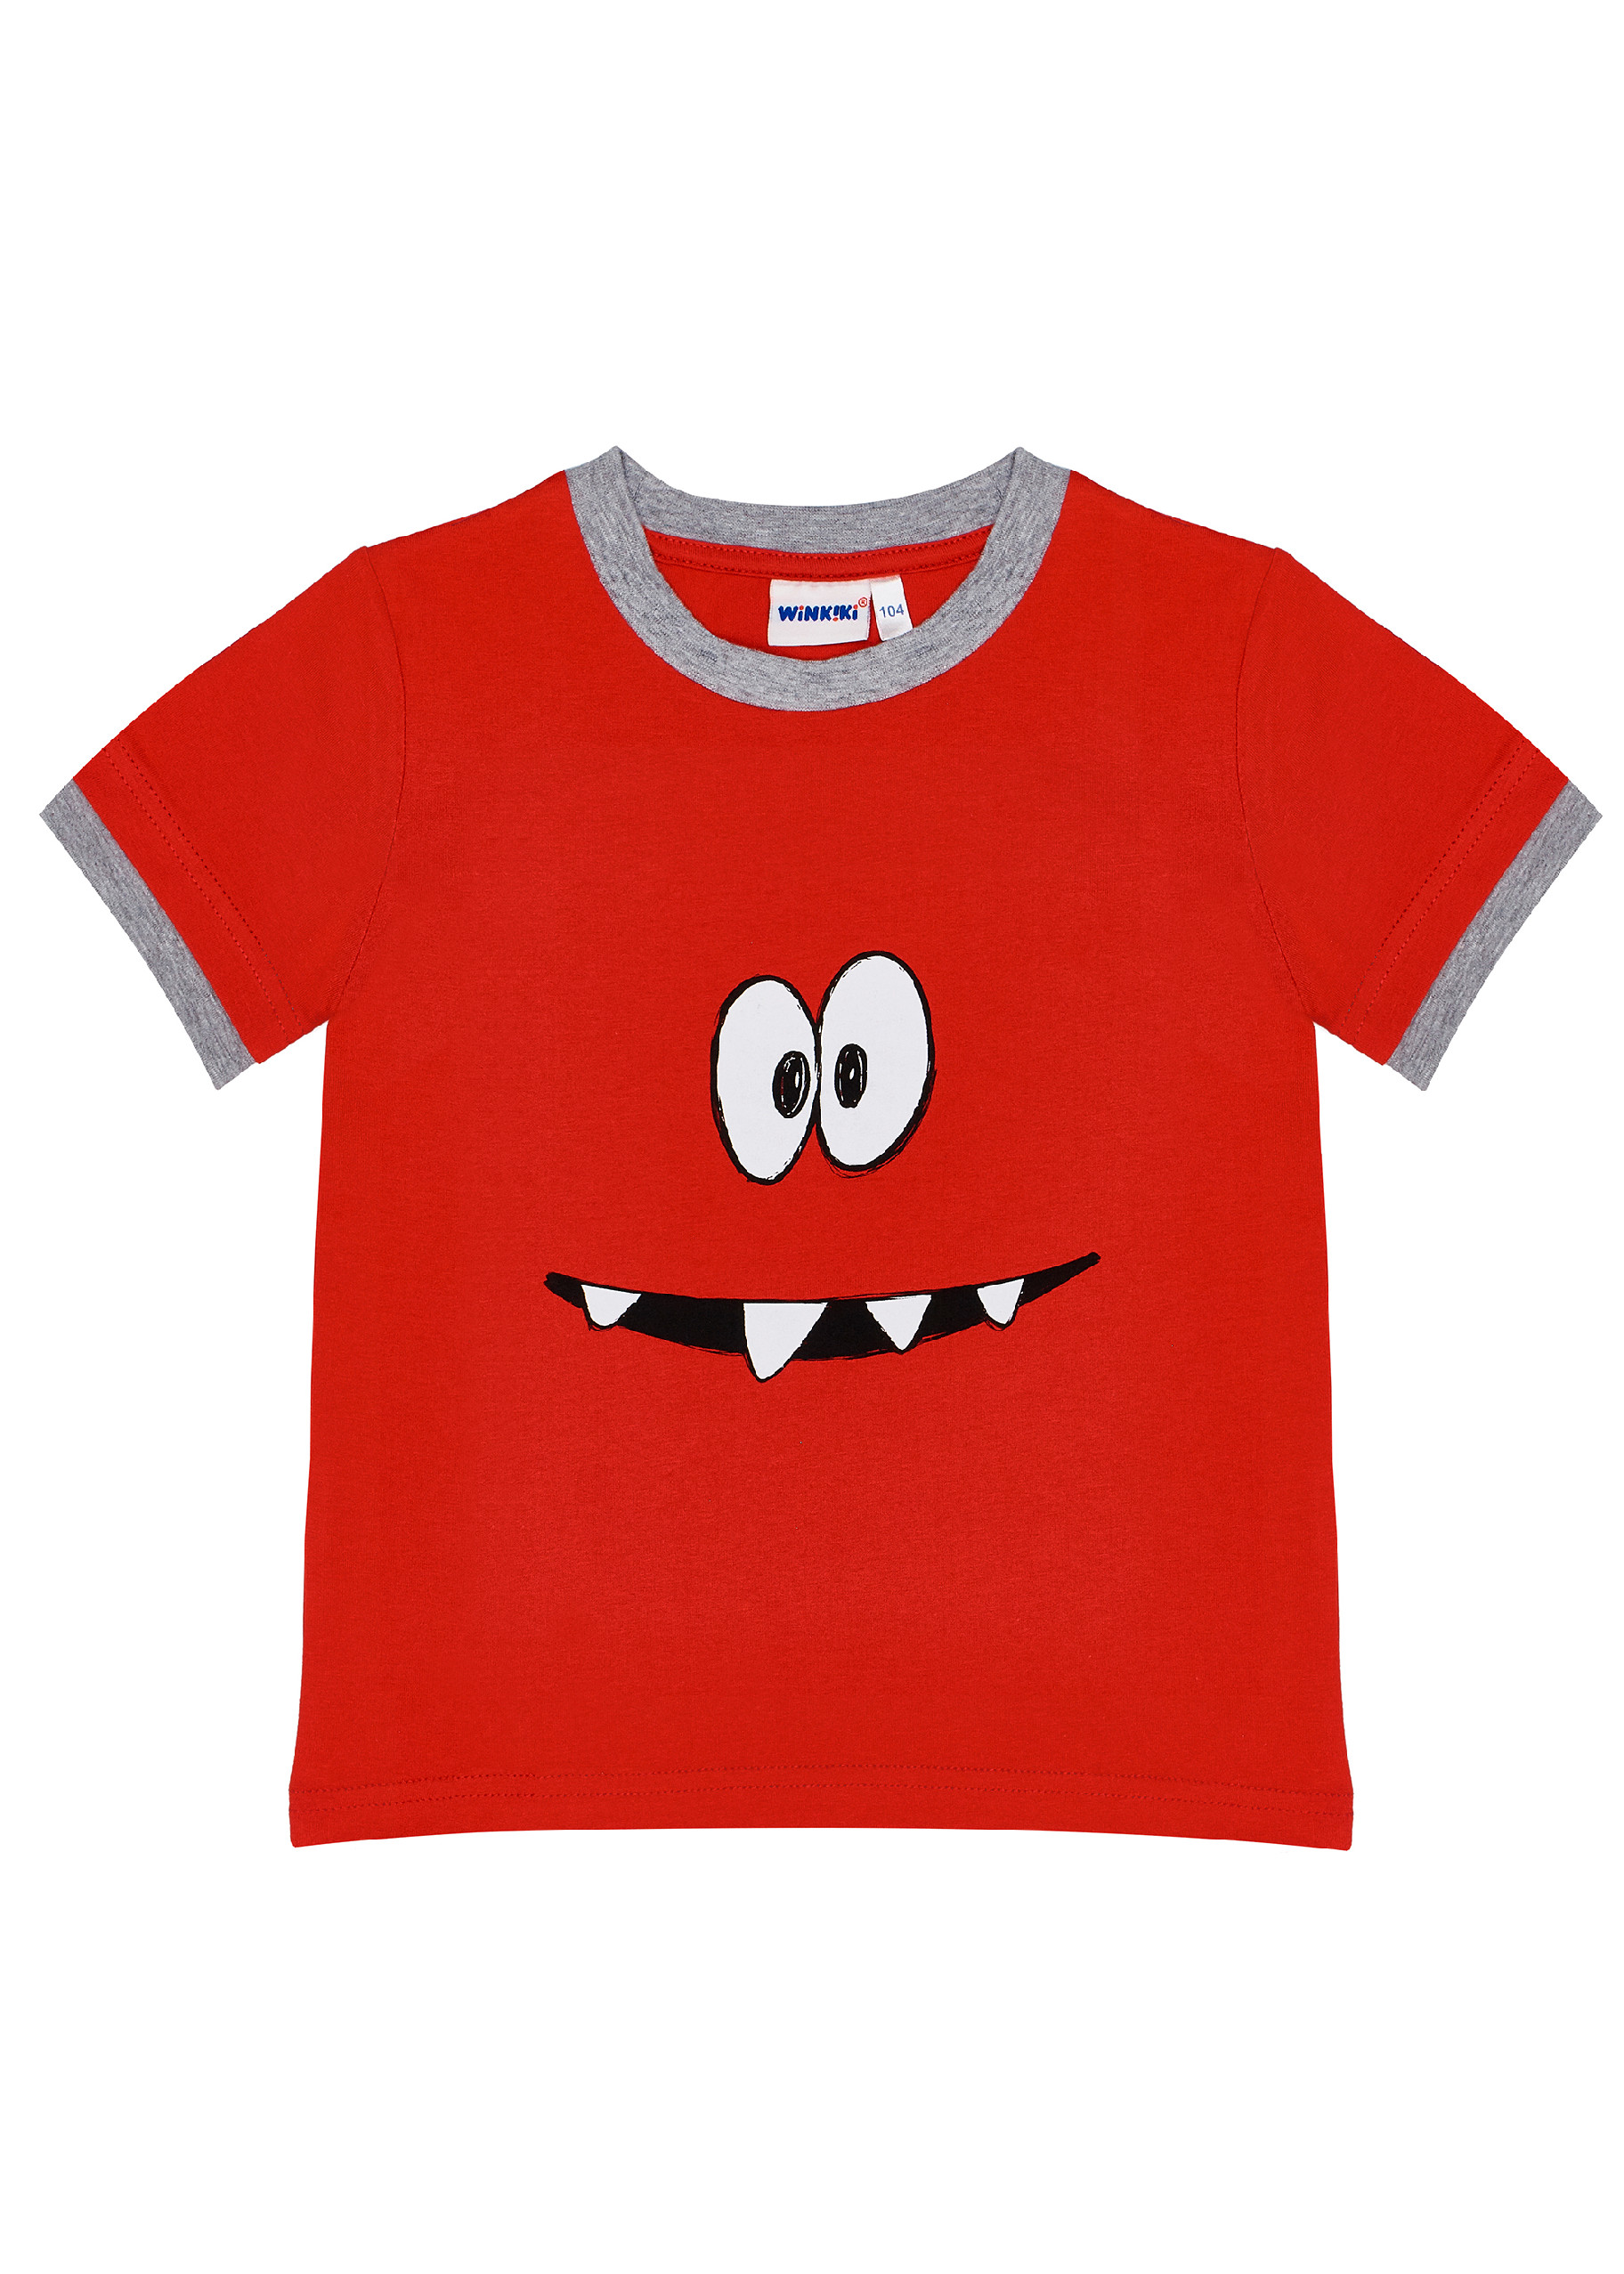 Chlapecké triko - Winkiki  WKB 91322, červená Barva: Červená, Velikost: 98